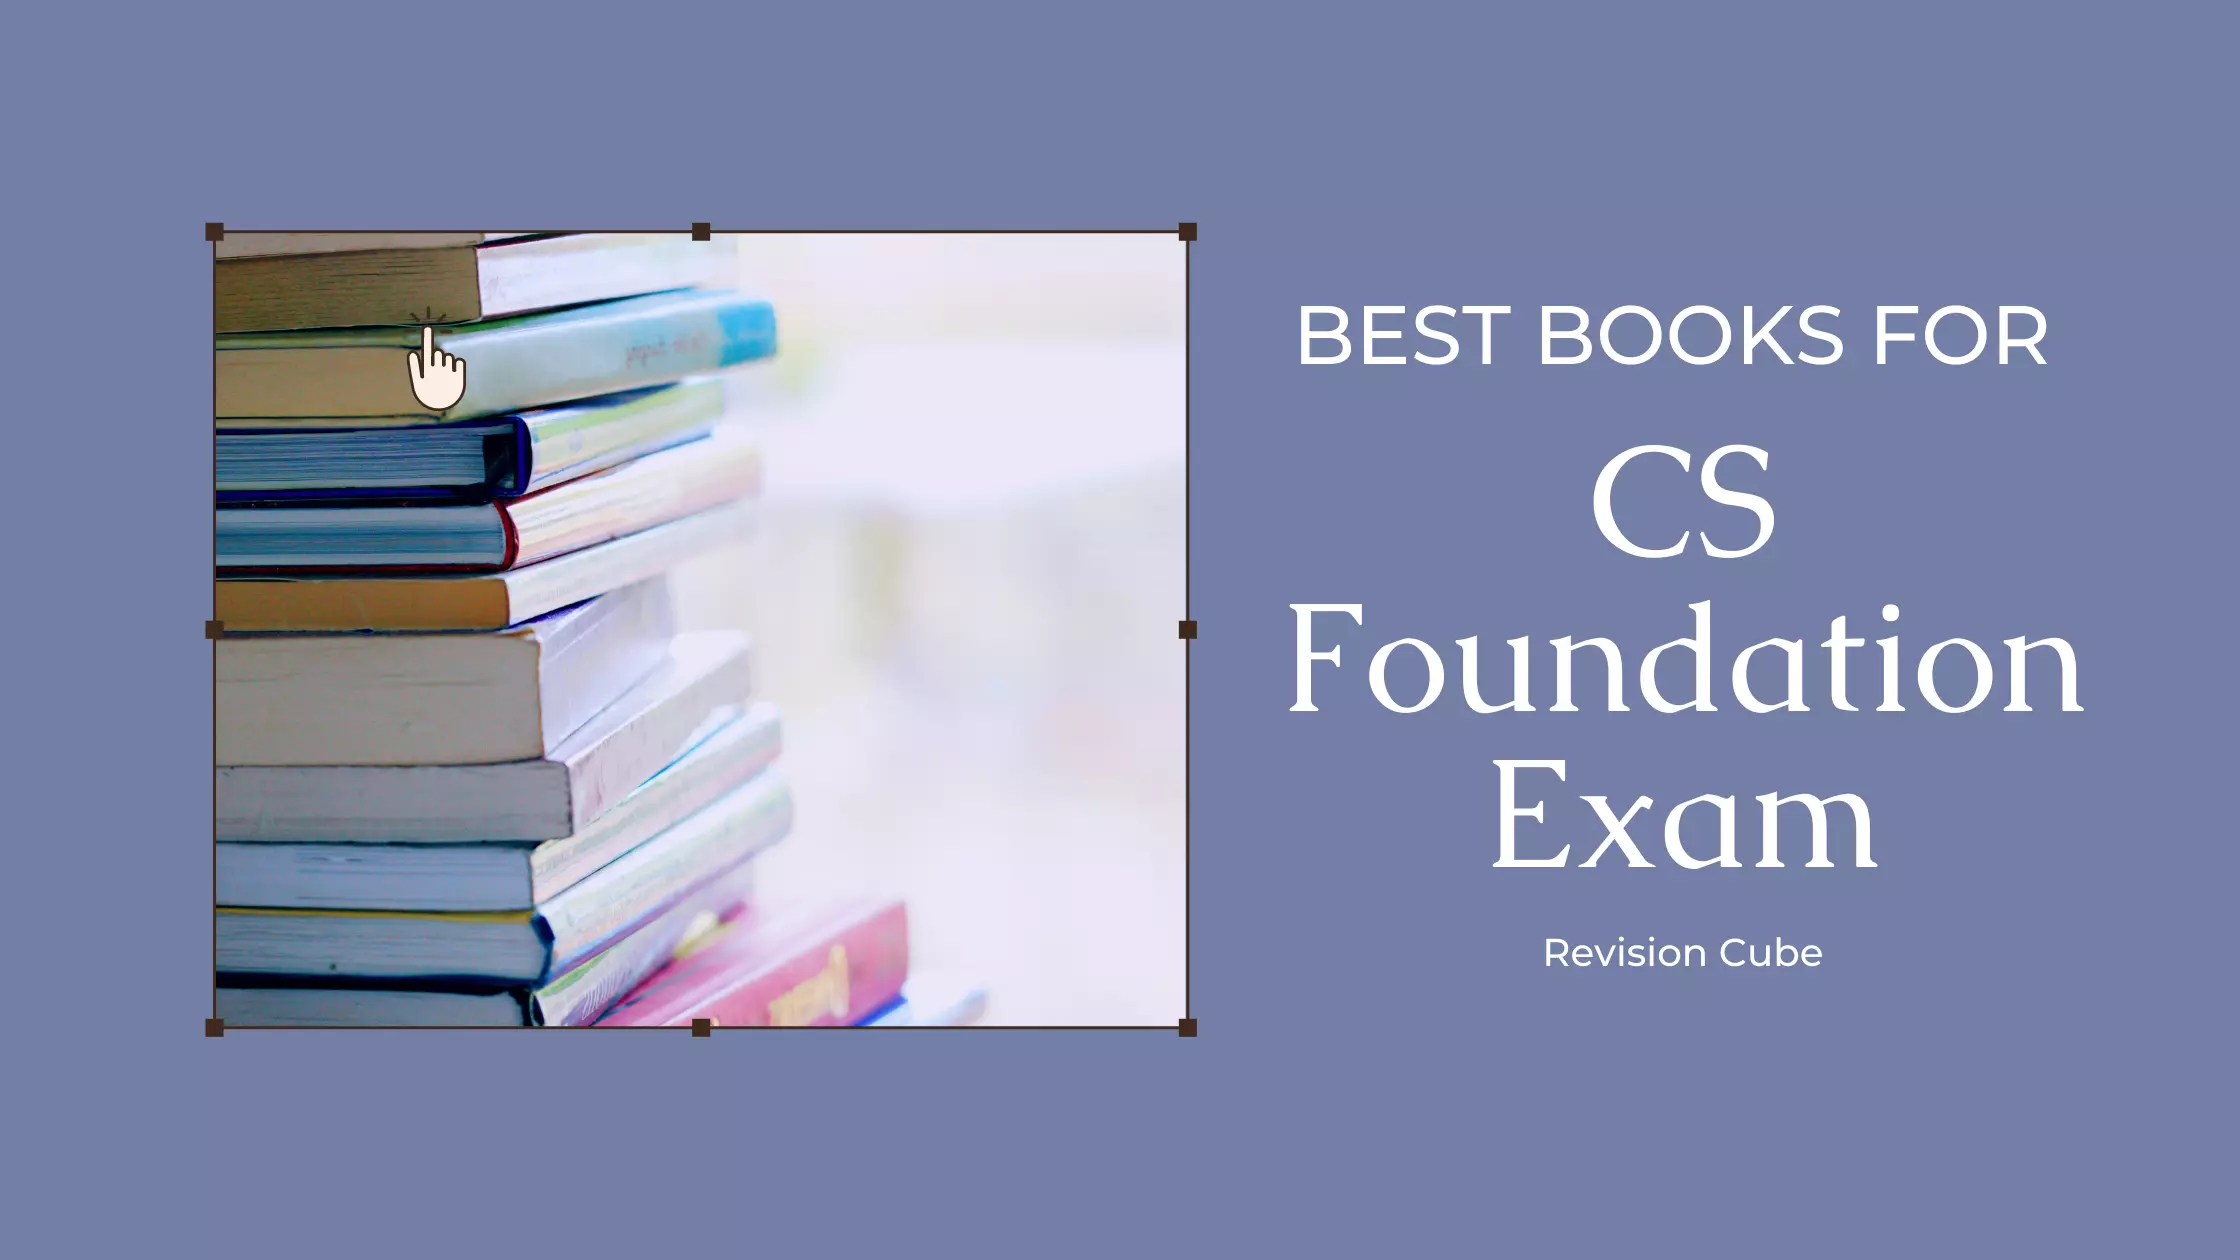 Best Books for CS Foundation Exam